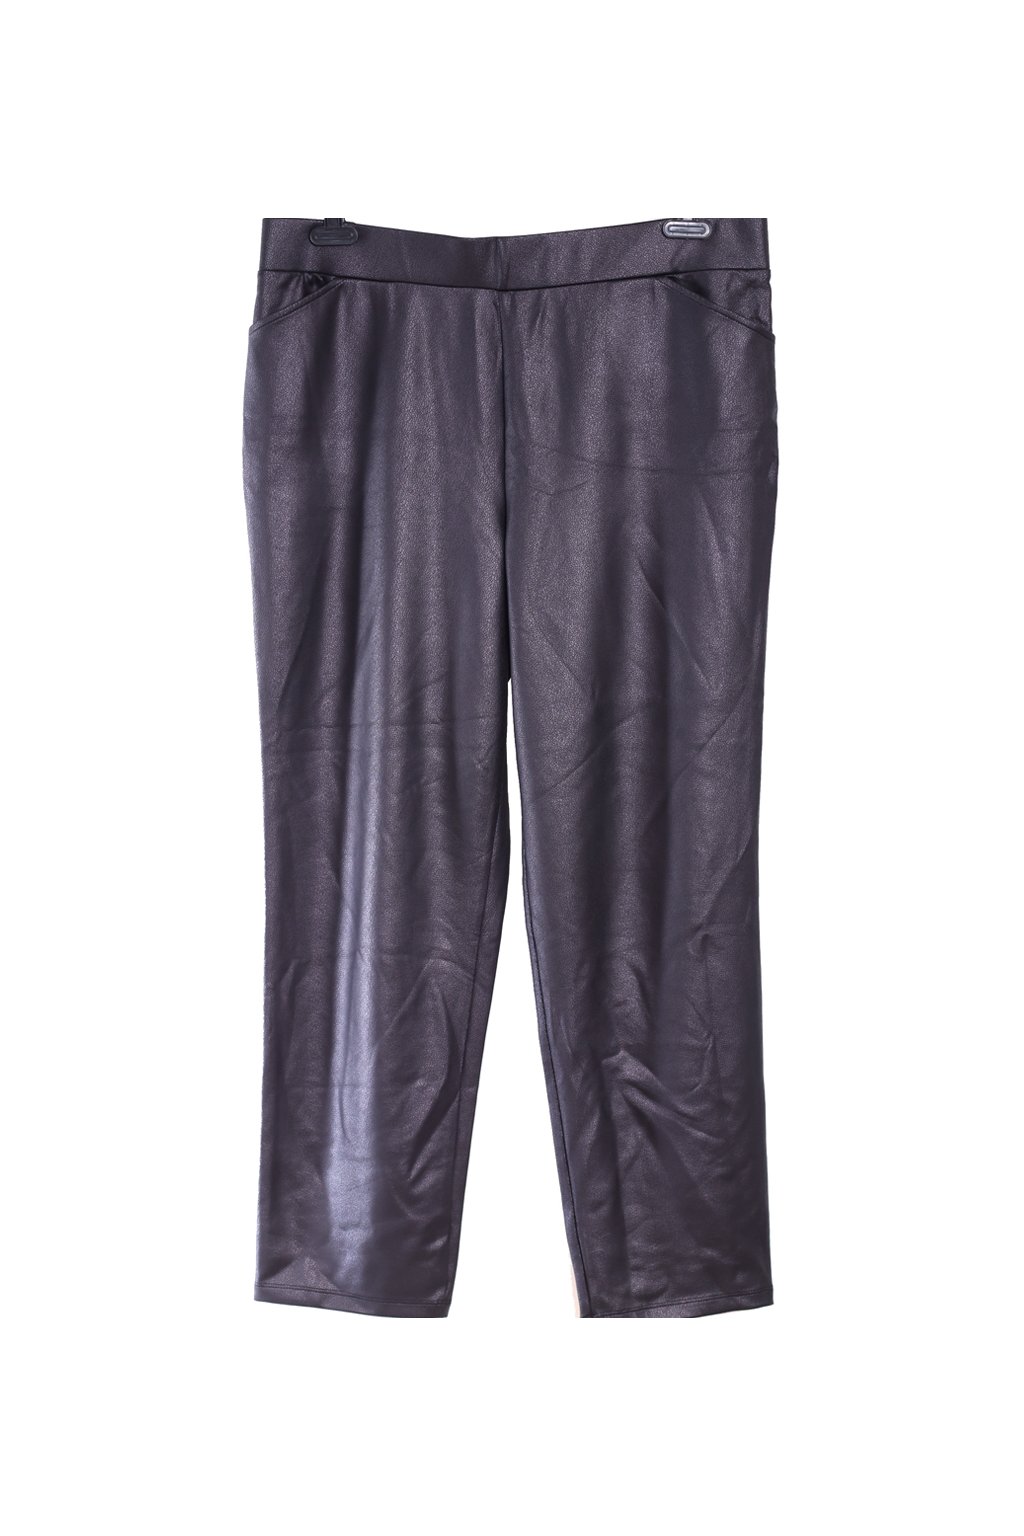 Dámské černé elastické kalhoty / Kim&Co / XXXL (50) / ANGLIE